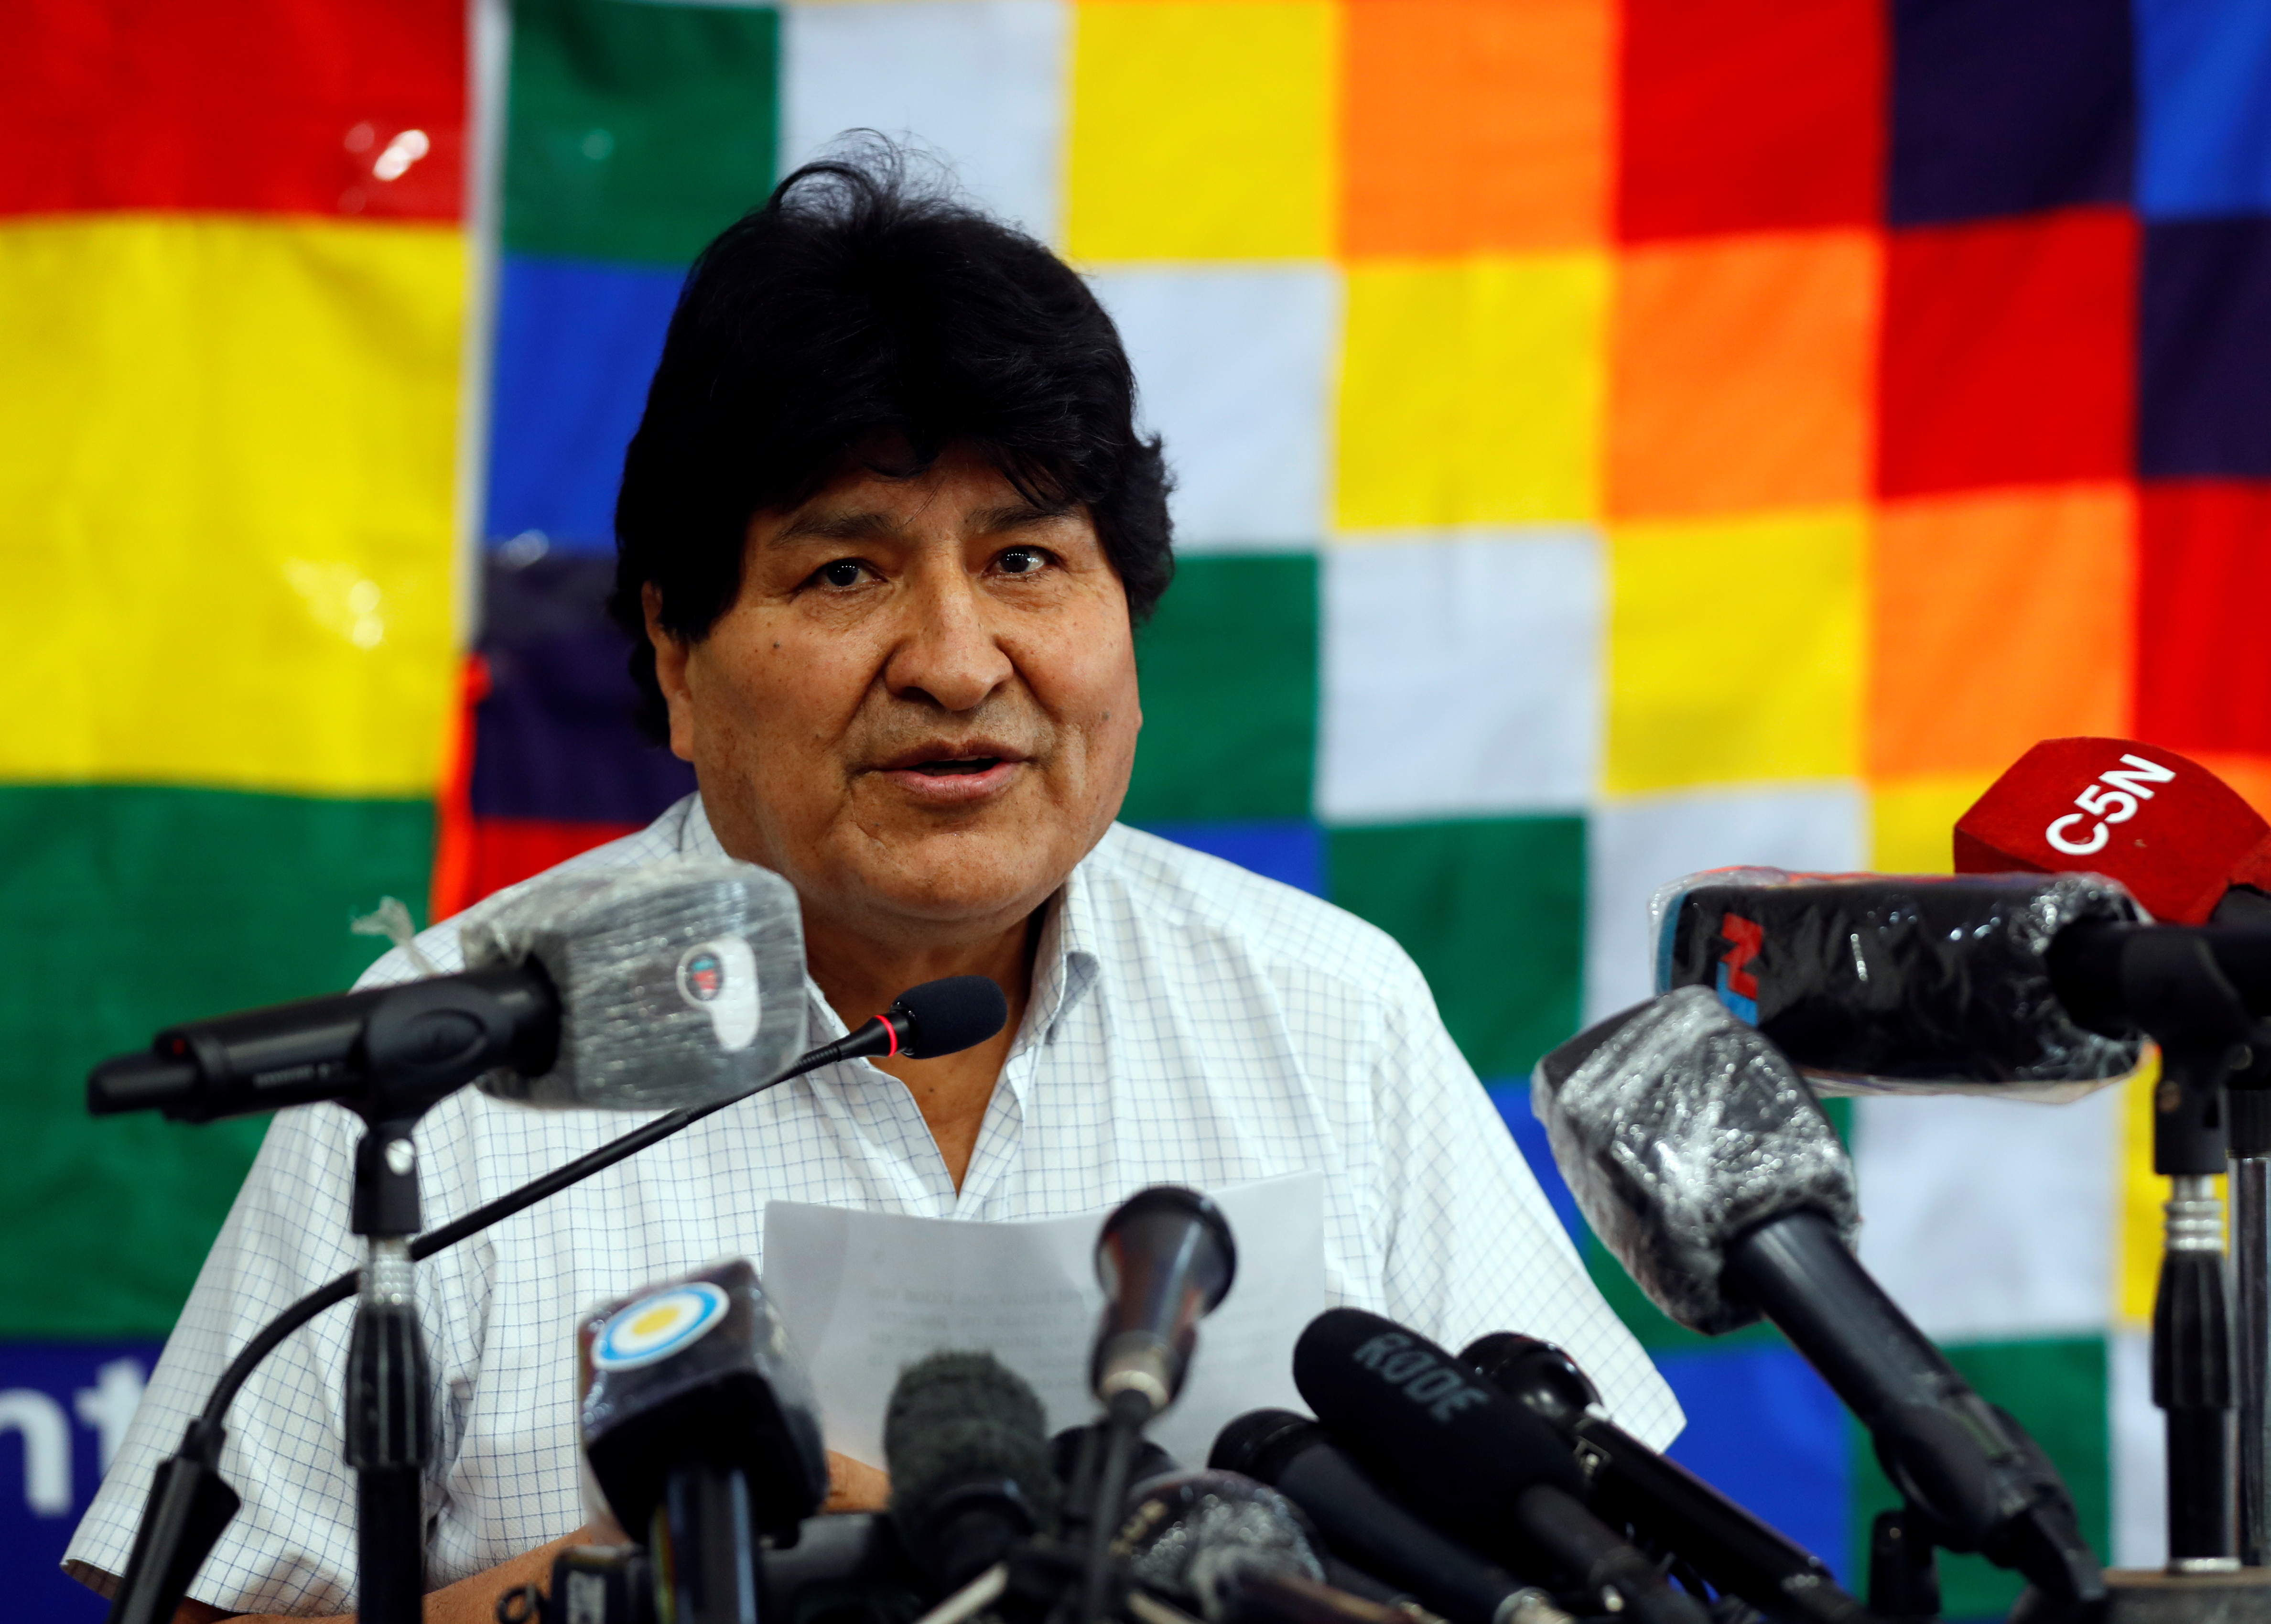 El ex presidente boliviano Evo Morales durante una conferencia de prensa este domingo en Buenos Aires, Argentina (REUTERS/Agustin Marcarian)